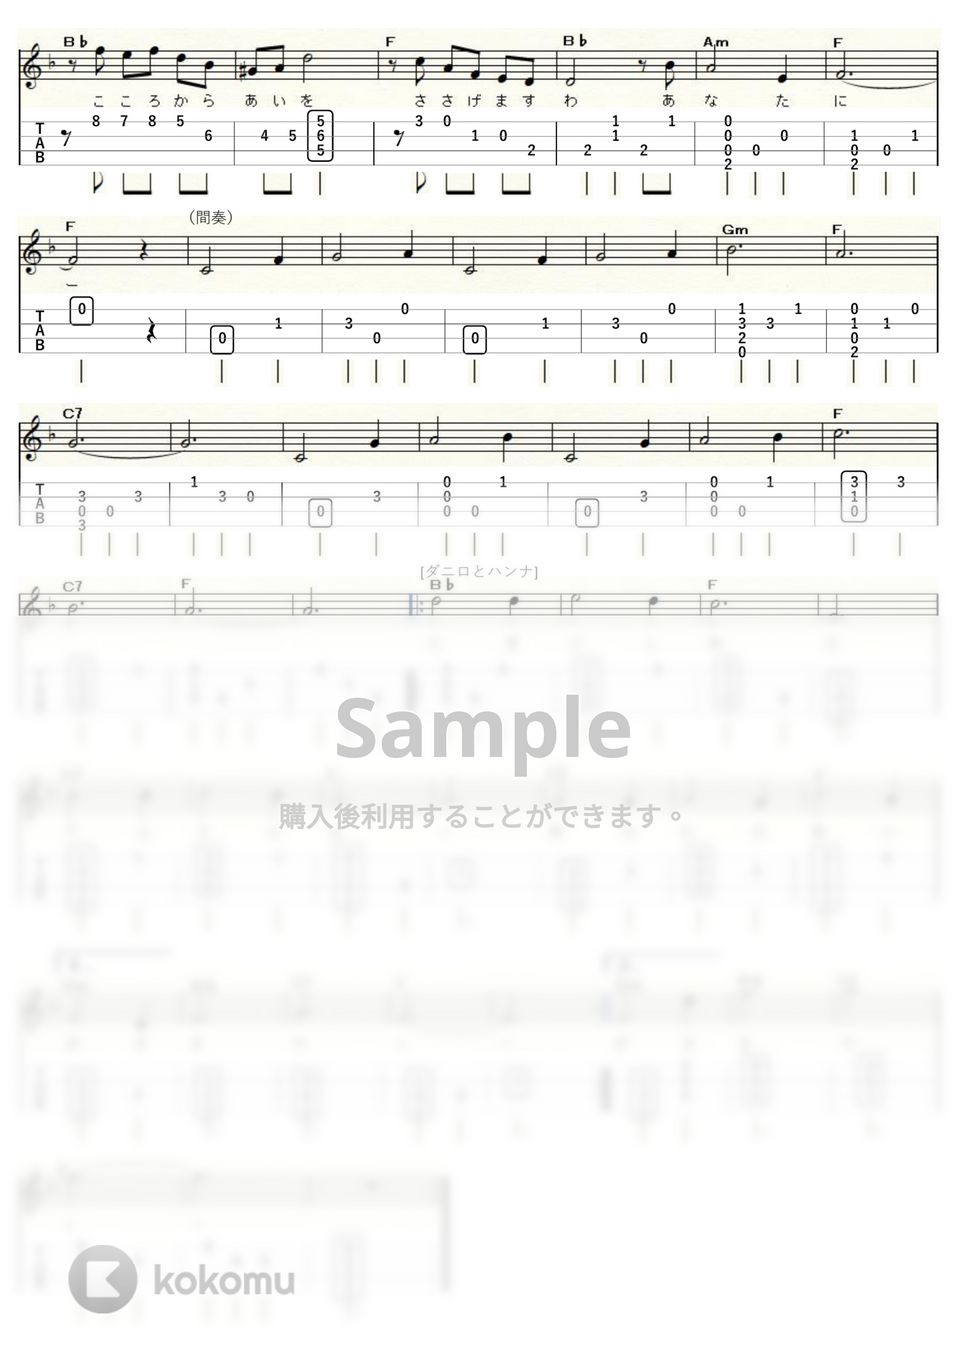 フランツ・リハール - メリー・ウィドウ・ワルツ (ウクレレソロ / High-G,Low-G / 初～中級) by ukulelepapa